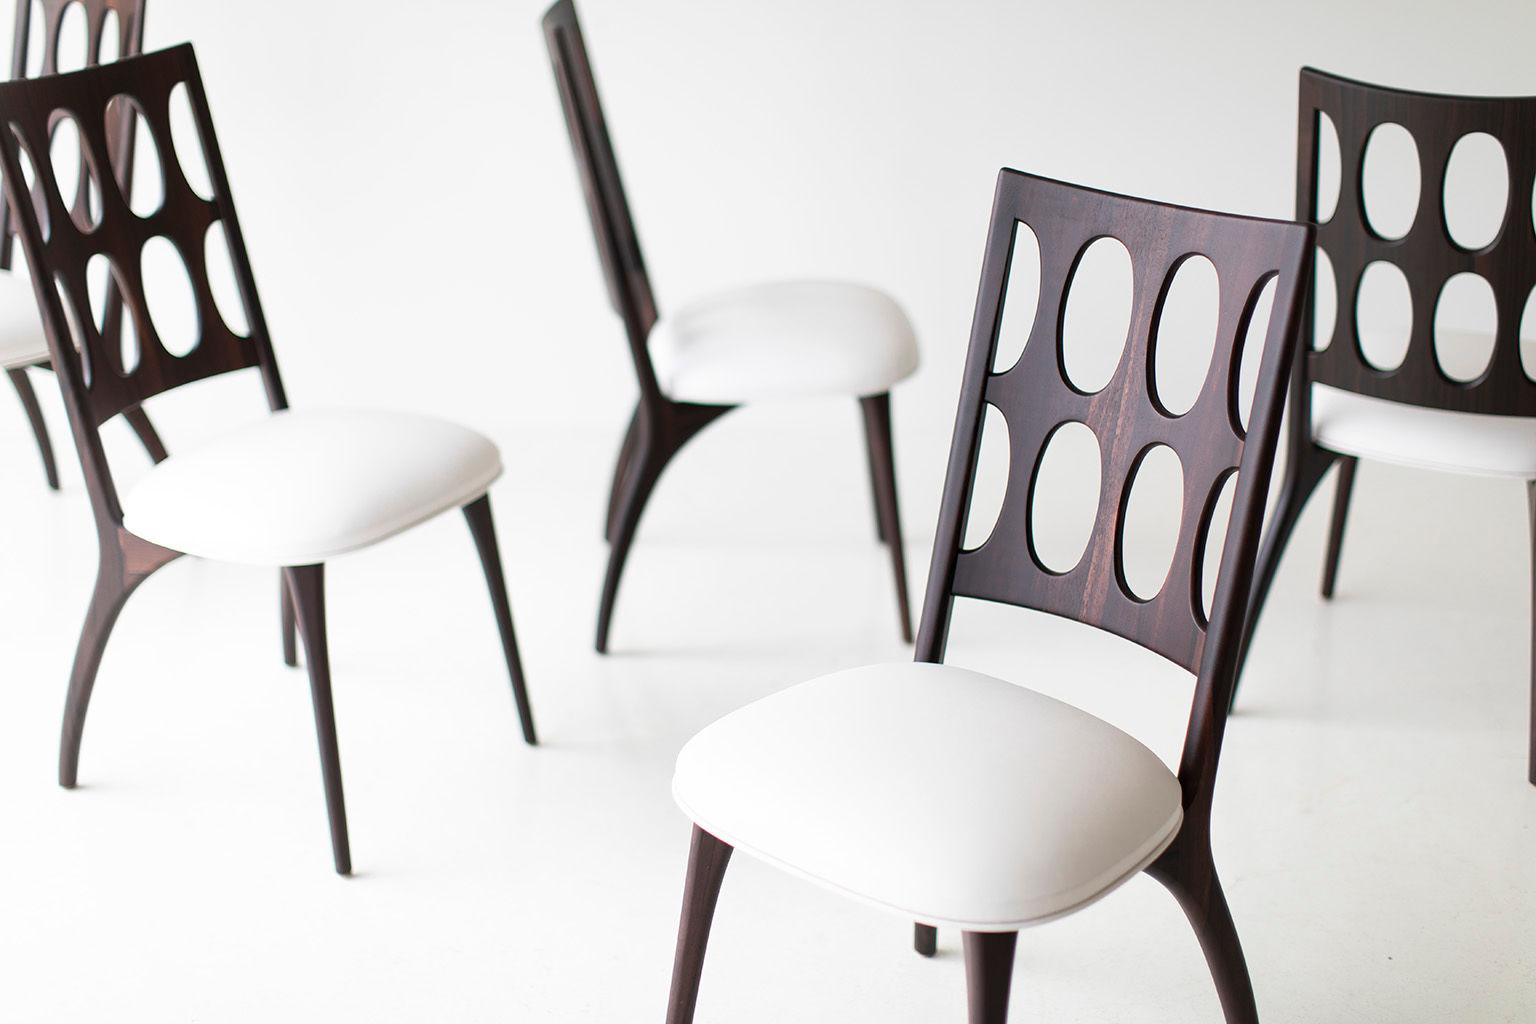 Les chaises de salle à manger modernes, 1901 pour Craft Associates Furniture sont fabriquées à la main par des experts. Chaque base de chaise est construite à la main à partir de bois dur. Les chaises présentées sont en ziricote, façonnées par des